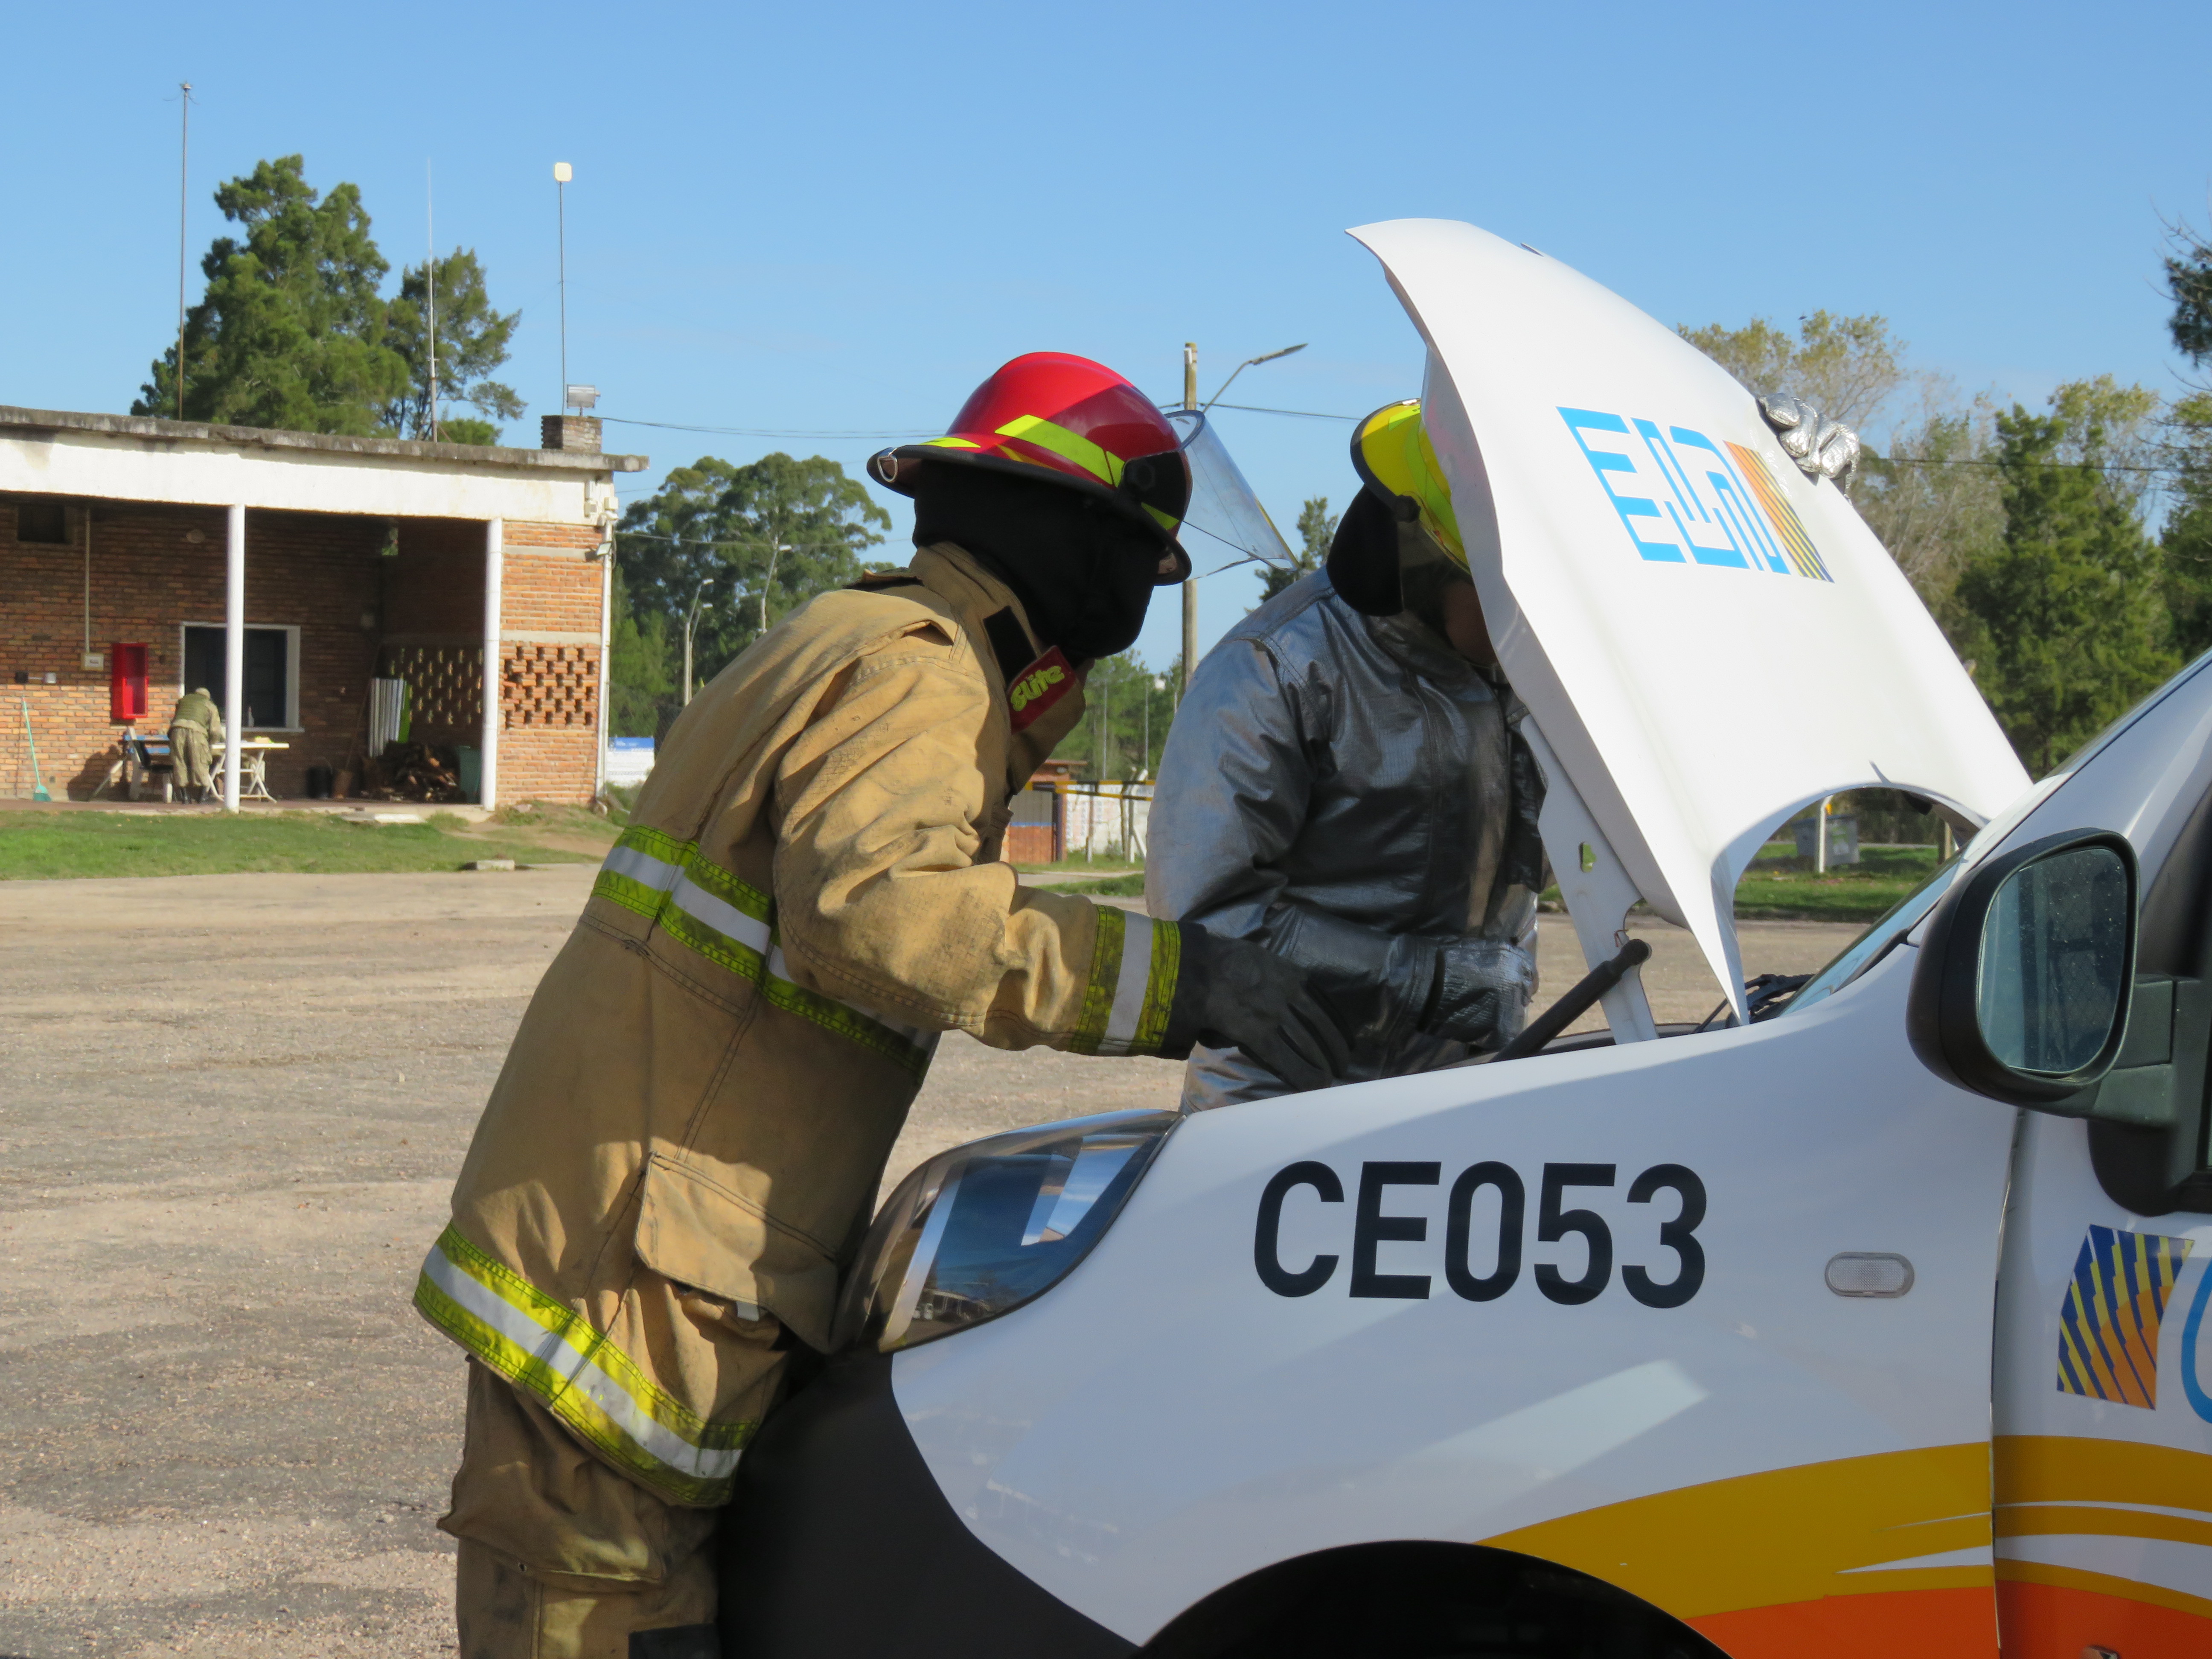 IMG_20230511_3839-UJJDtipE.jpg - El pasado jueves 11 de mayo culminó la &#034;Capacitación para bomberos sobre manejo de incidentes relacionados con la movilidad eléctrica&#034; en donde se capacitaron a 25 bomberos en la Base Aérea de Santa Bernardina del departamento de Durazno. Esta capacitación es la continuación del primer curso regional que organizó la plataforma MOVE del Programa de la Naciones Unidas para el Medio Ambiente a finales de 2022 en Paraguay, donde participaron y se formaron dos bomberos instructores de Uruguay.